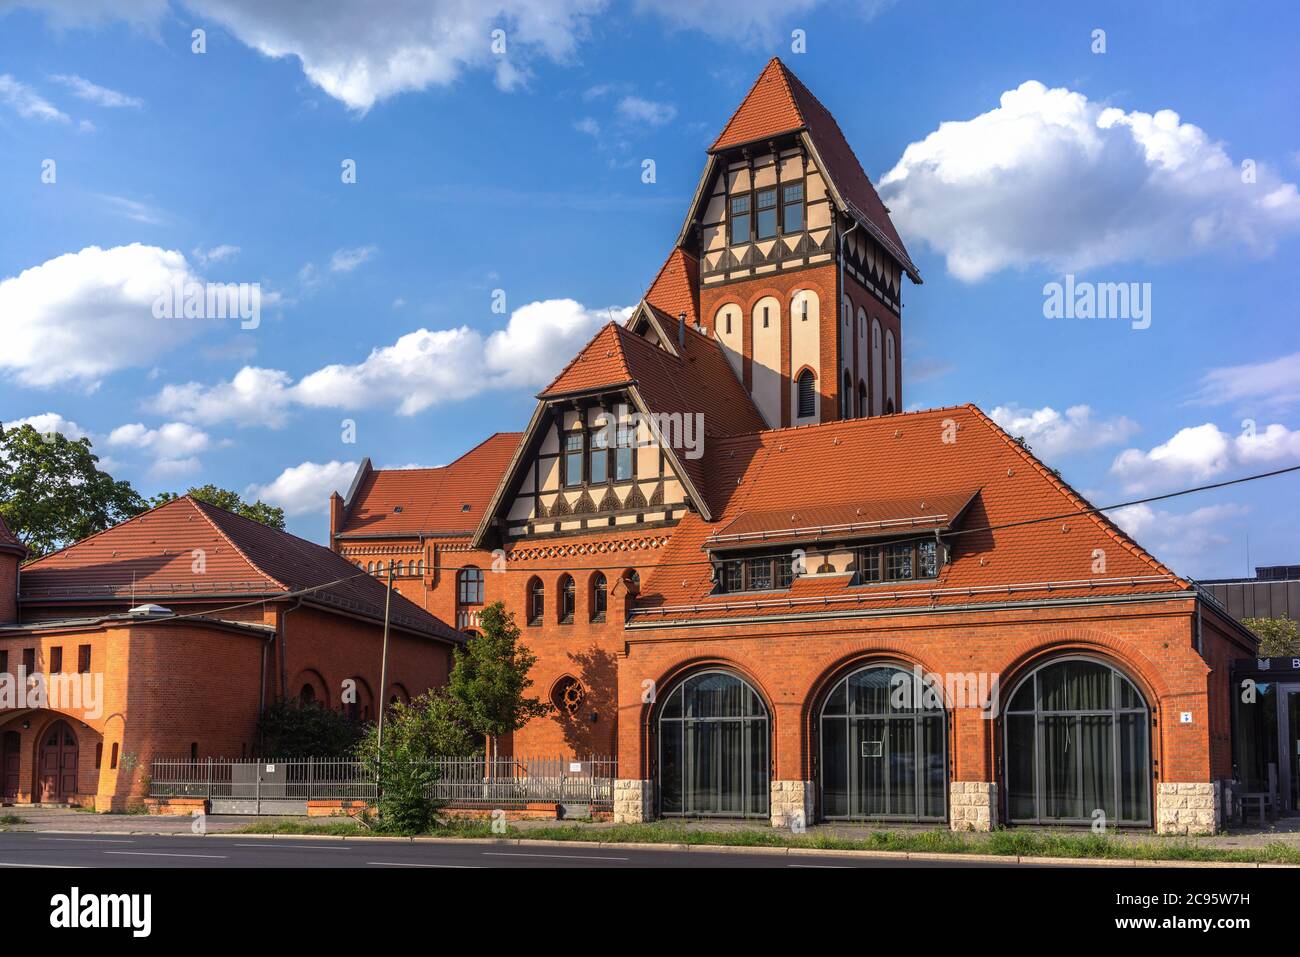 Alte Feuerwache vecchio edificio in mattoni rossi - a Berlino Schöneweide 2020, Berlino, Germania, Europa Foto Stock